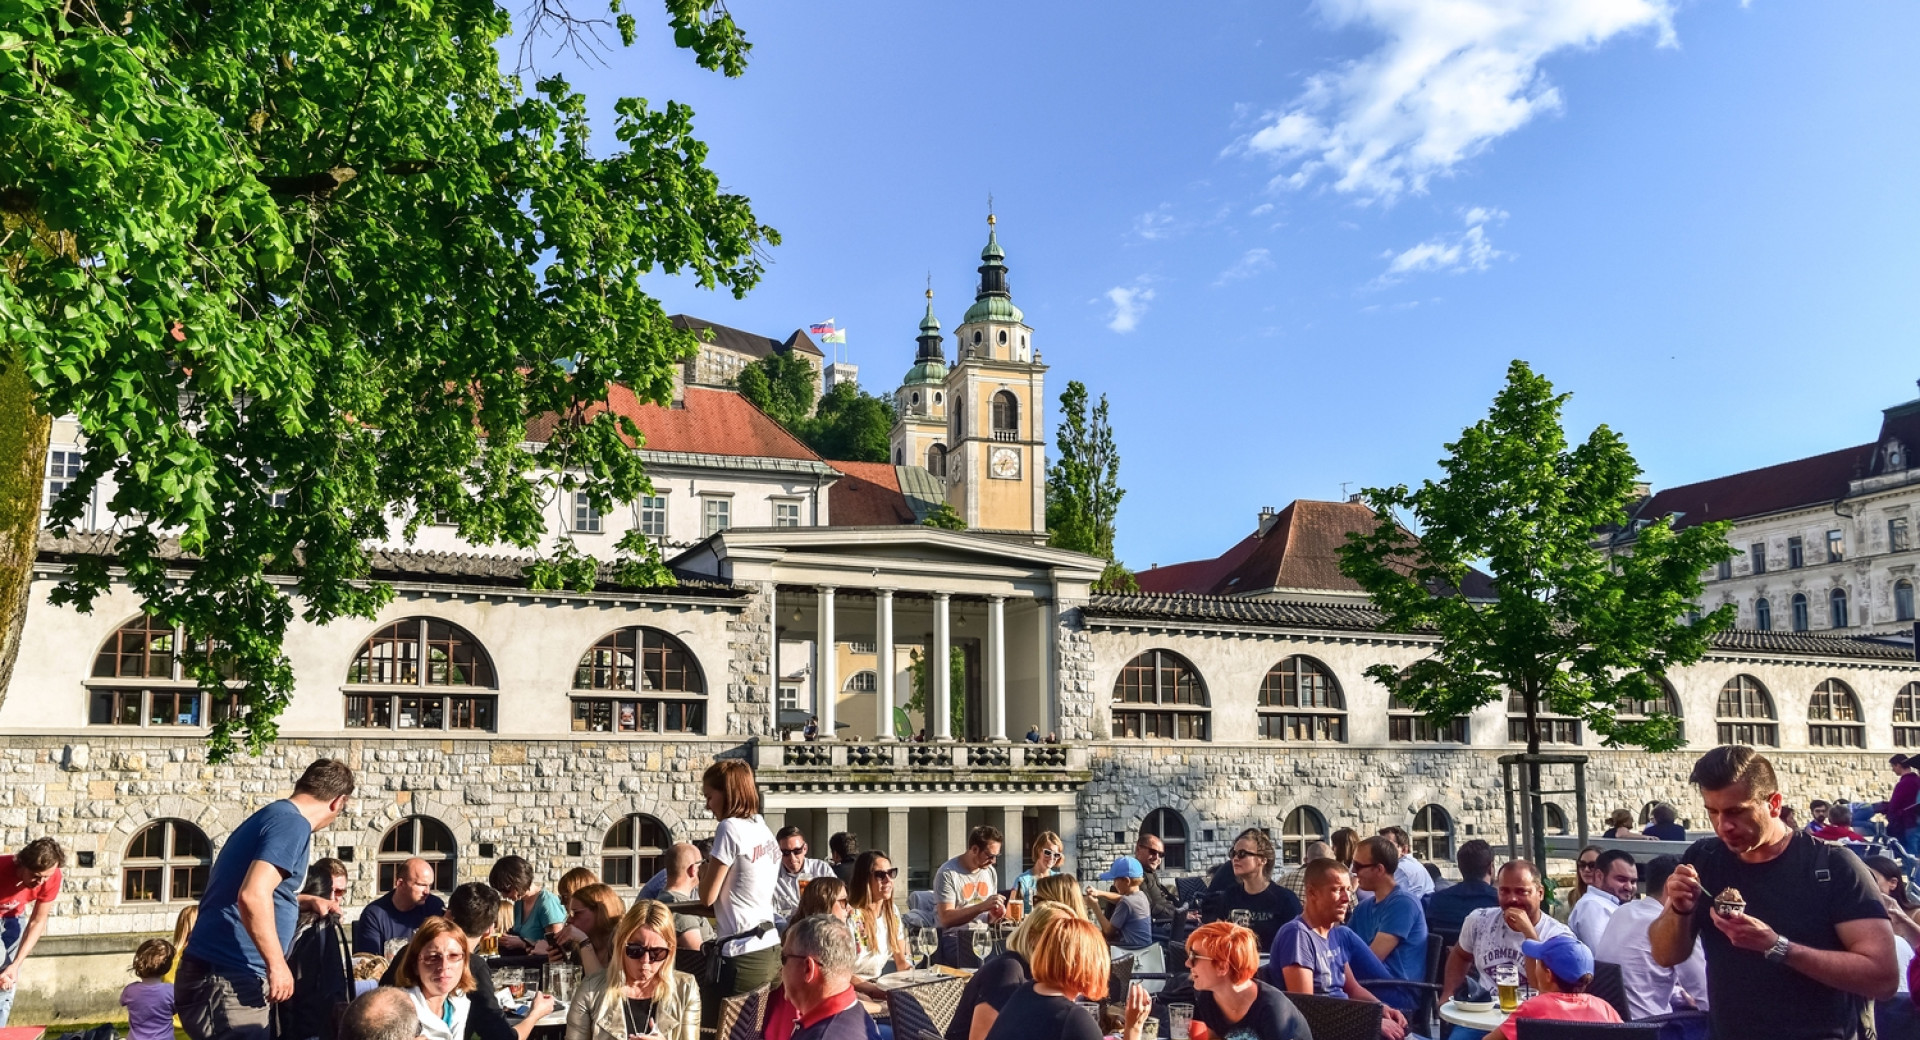 Polni gostinski vrtovi na nabrežju Ljubljanice; nasproti Plečnikove tržnice